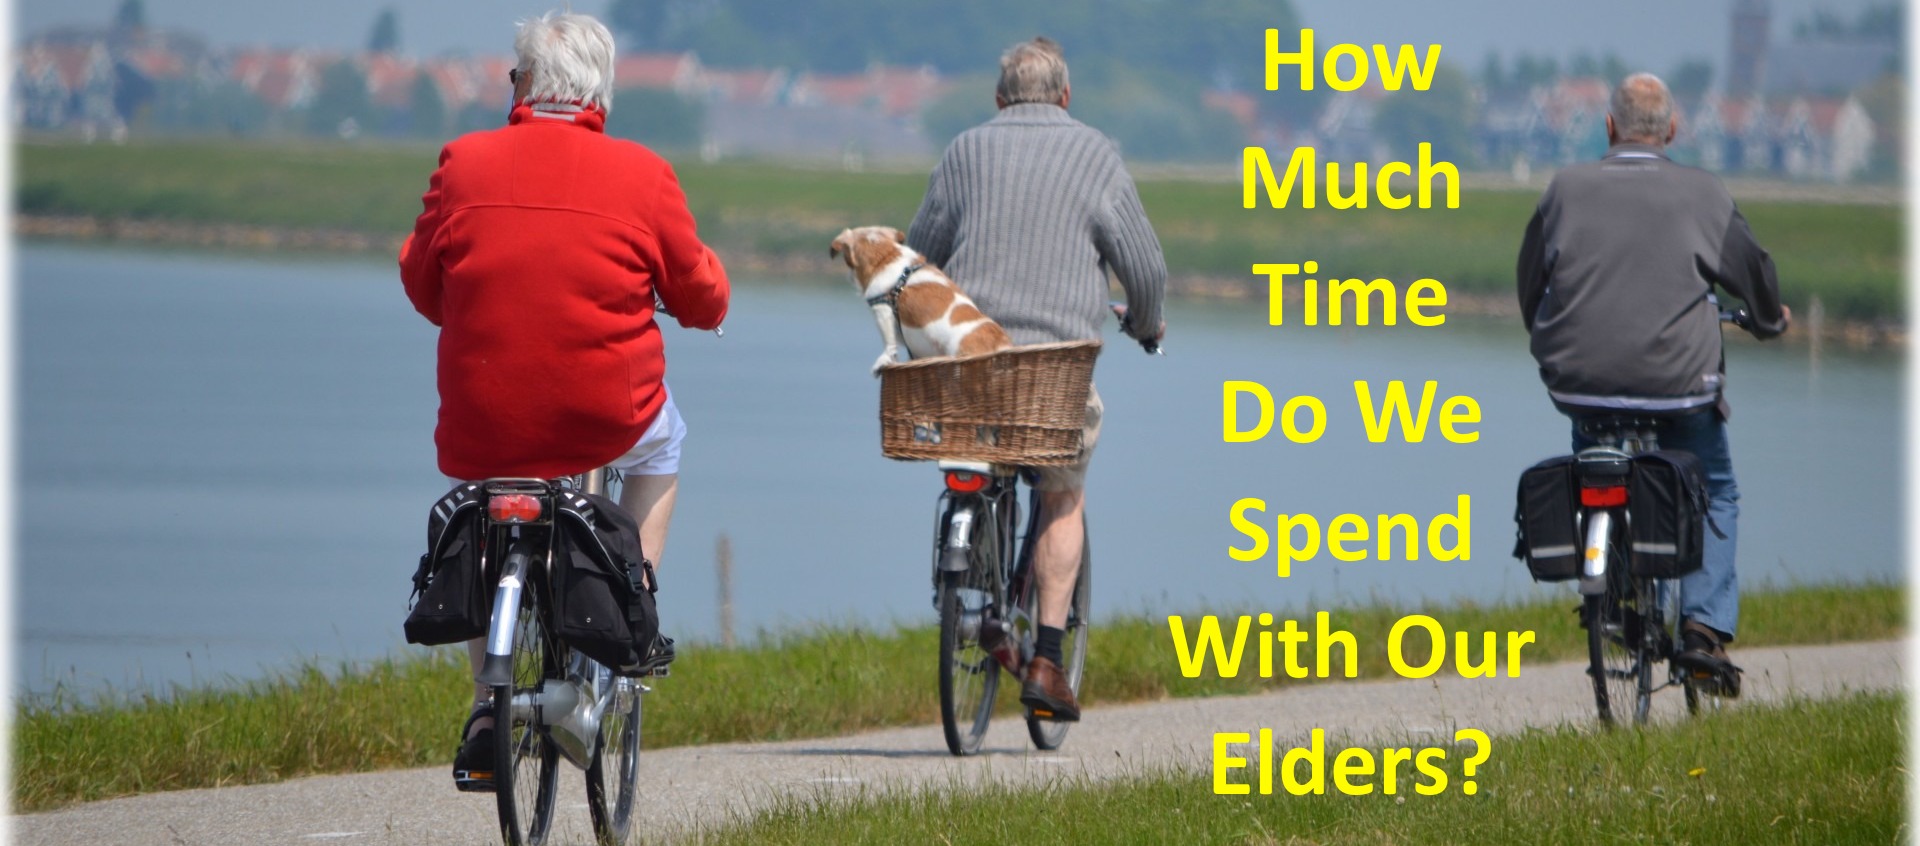 The Elderly – Wisdom or Burden